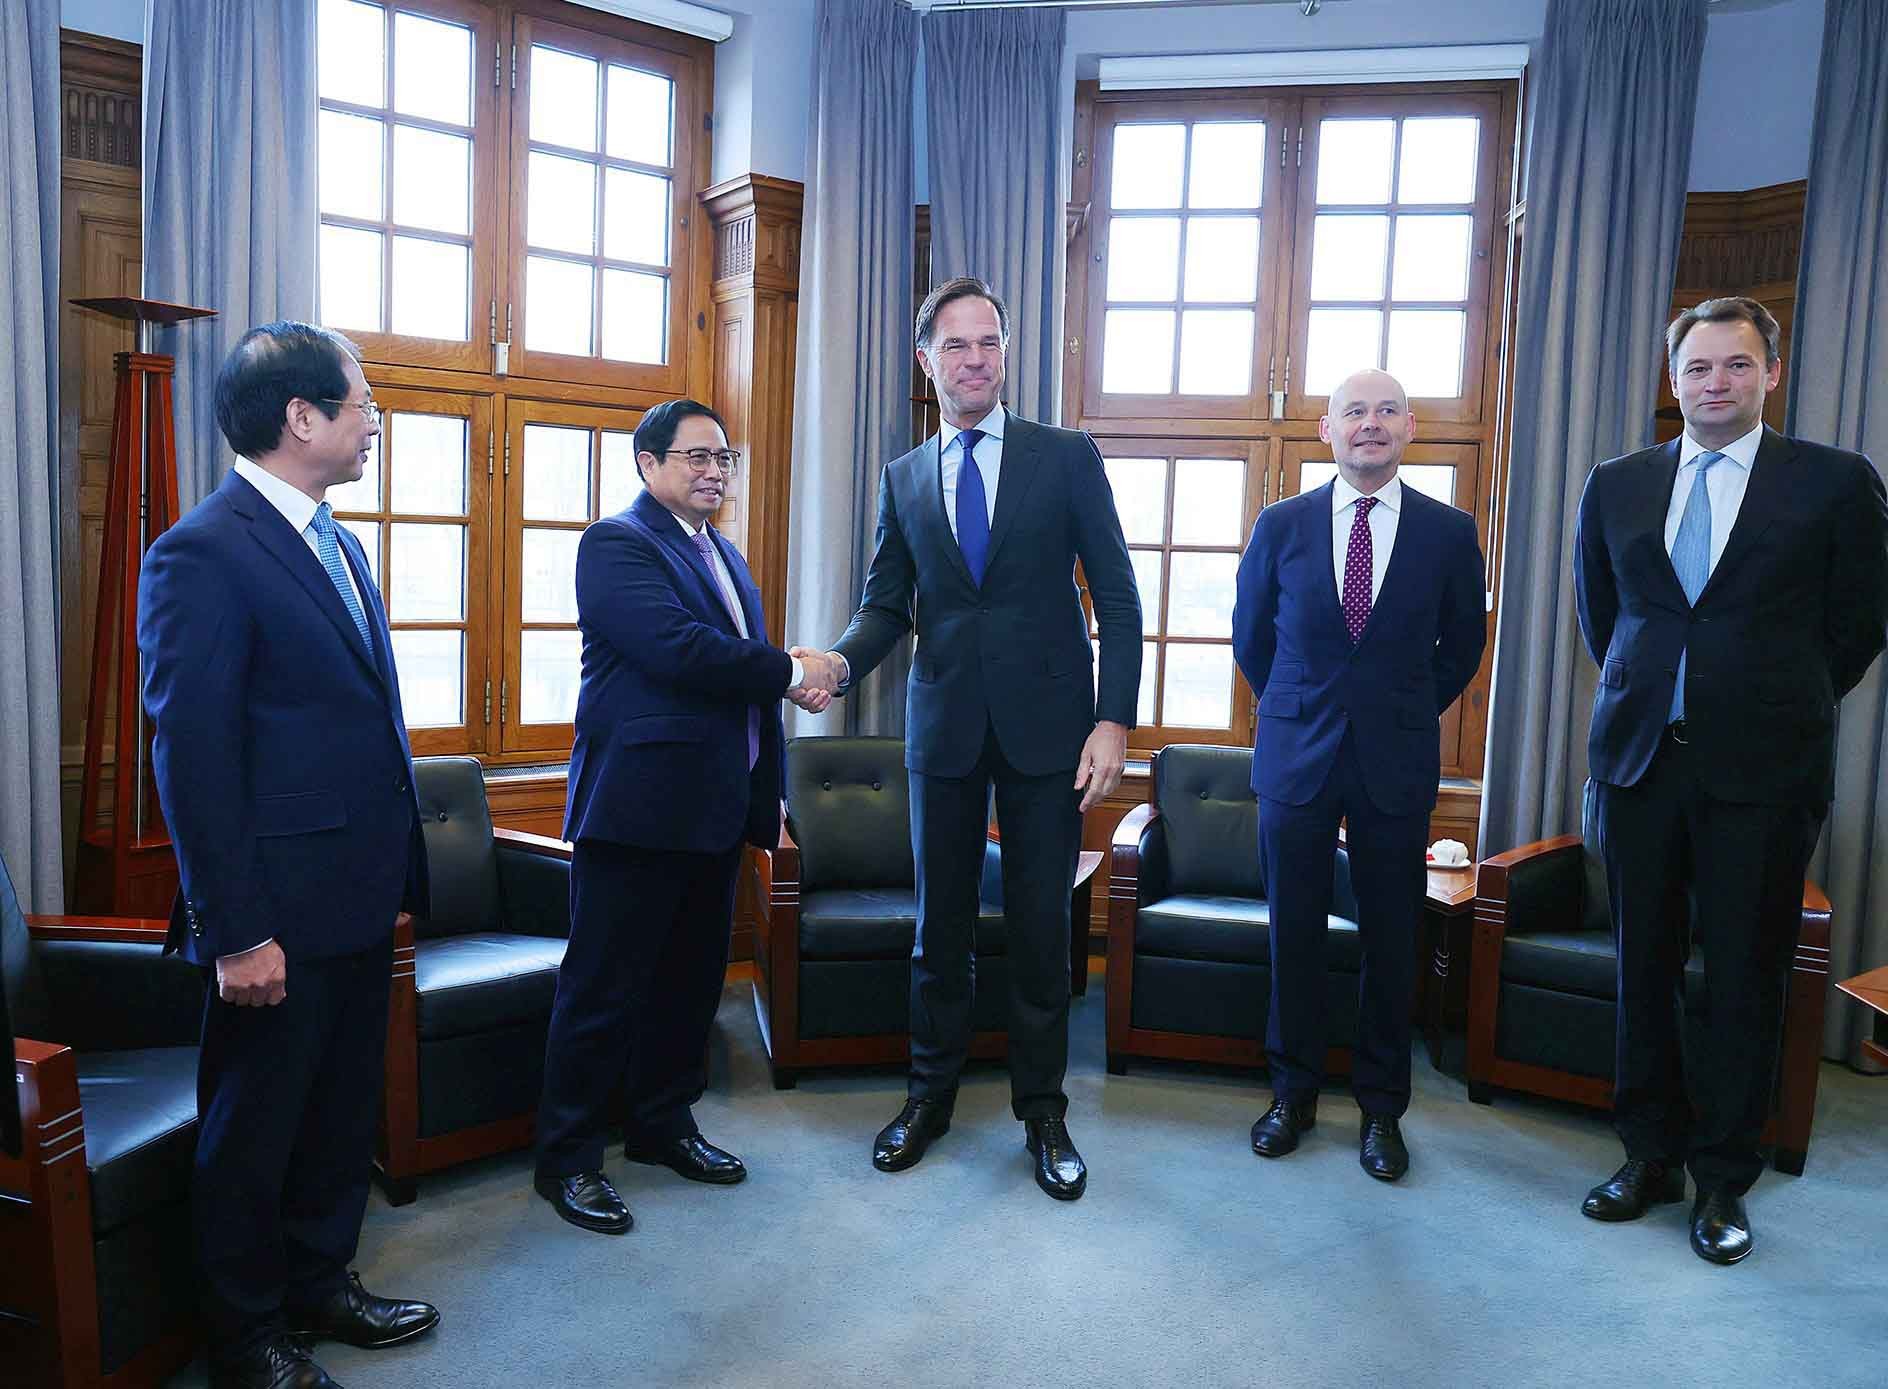 Ngay sau Lễ đón trọng thể, Thủ tướng Chính phủ Phạm Minh Chính đã tiến hành hội đàm với Thủ tướng Mark Rutte. (NguồnVGP)